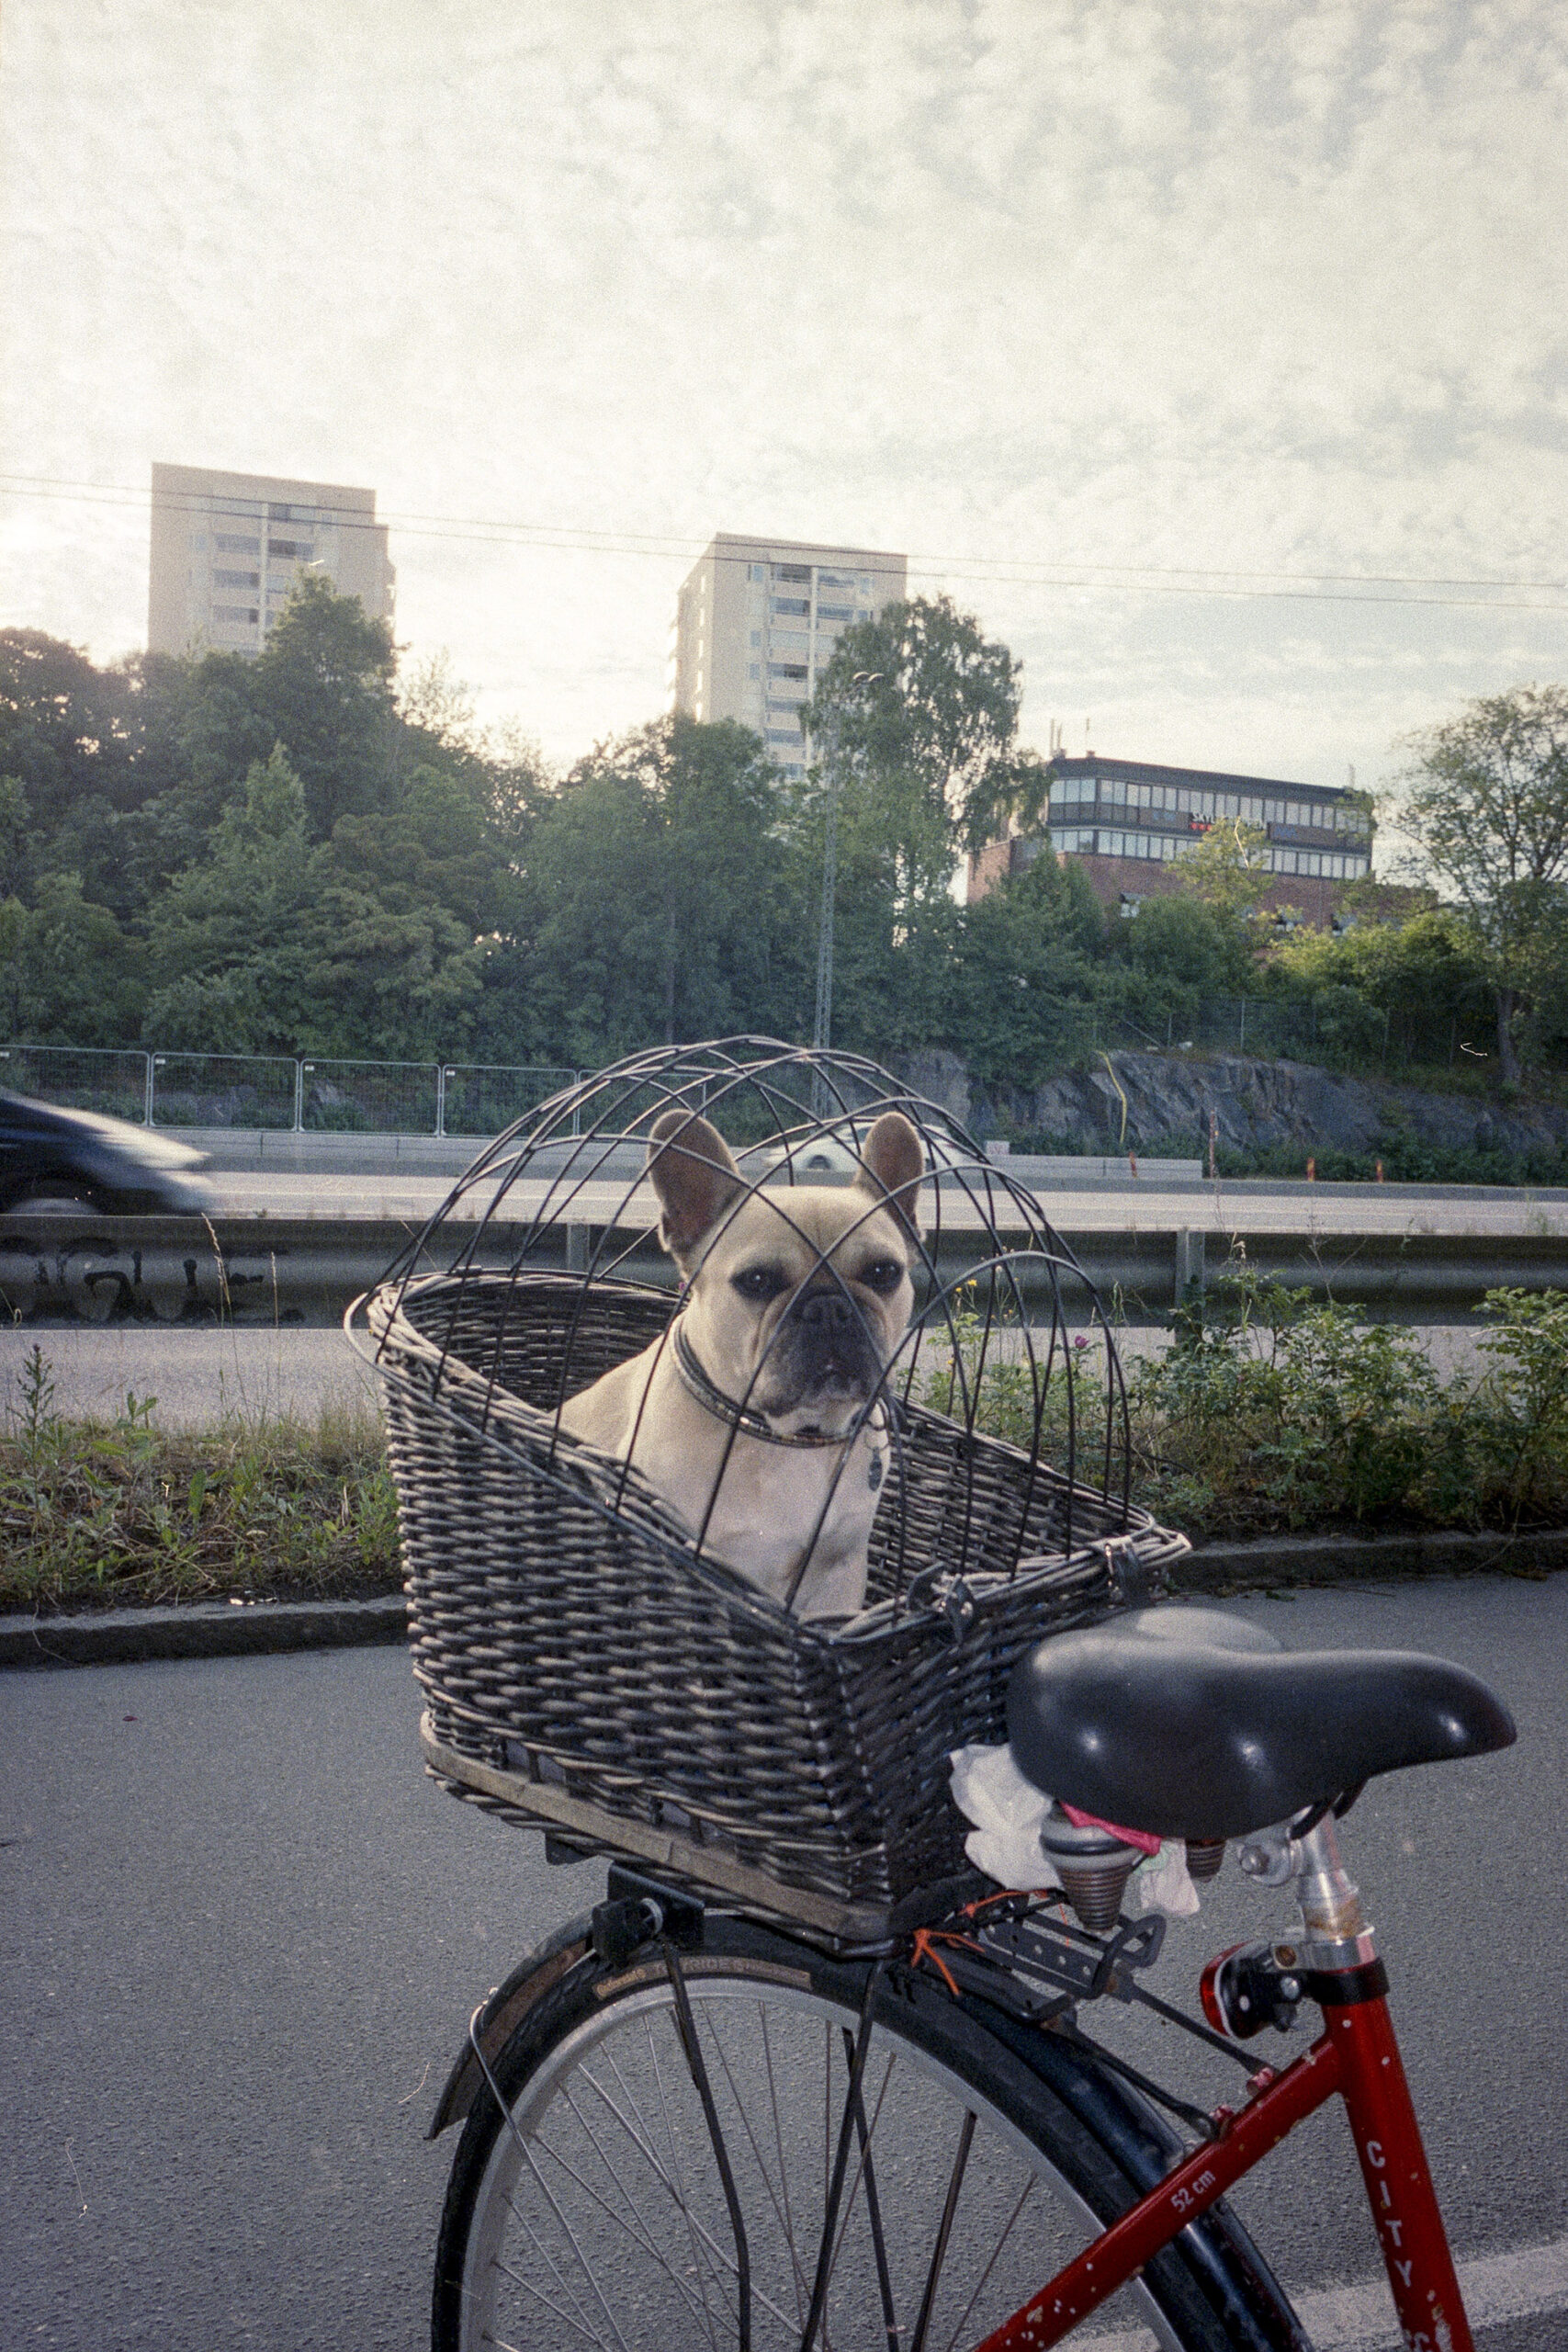 Dog on a bike